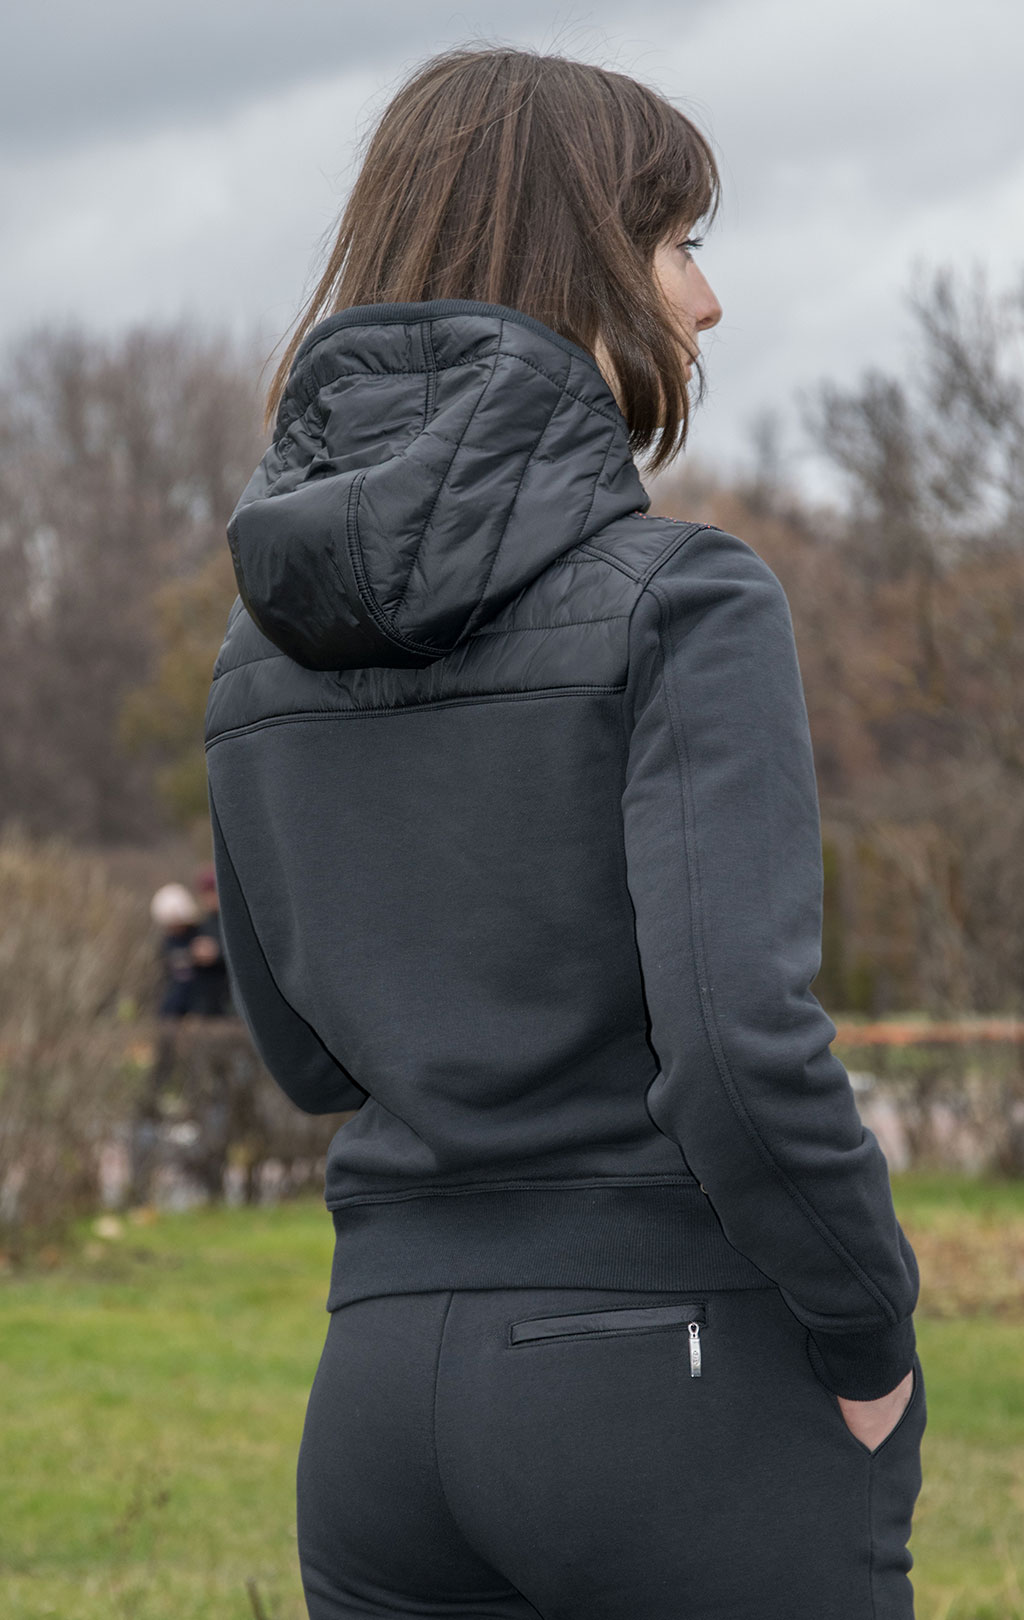 Женская толстовка с капюшоном PARAJUMPERS CAELIE FW21/22 black 